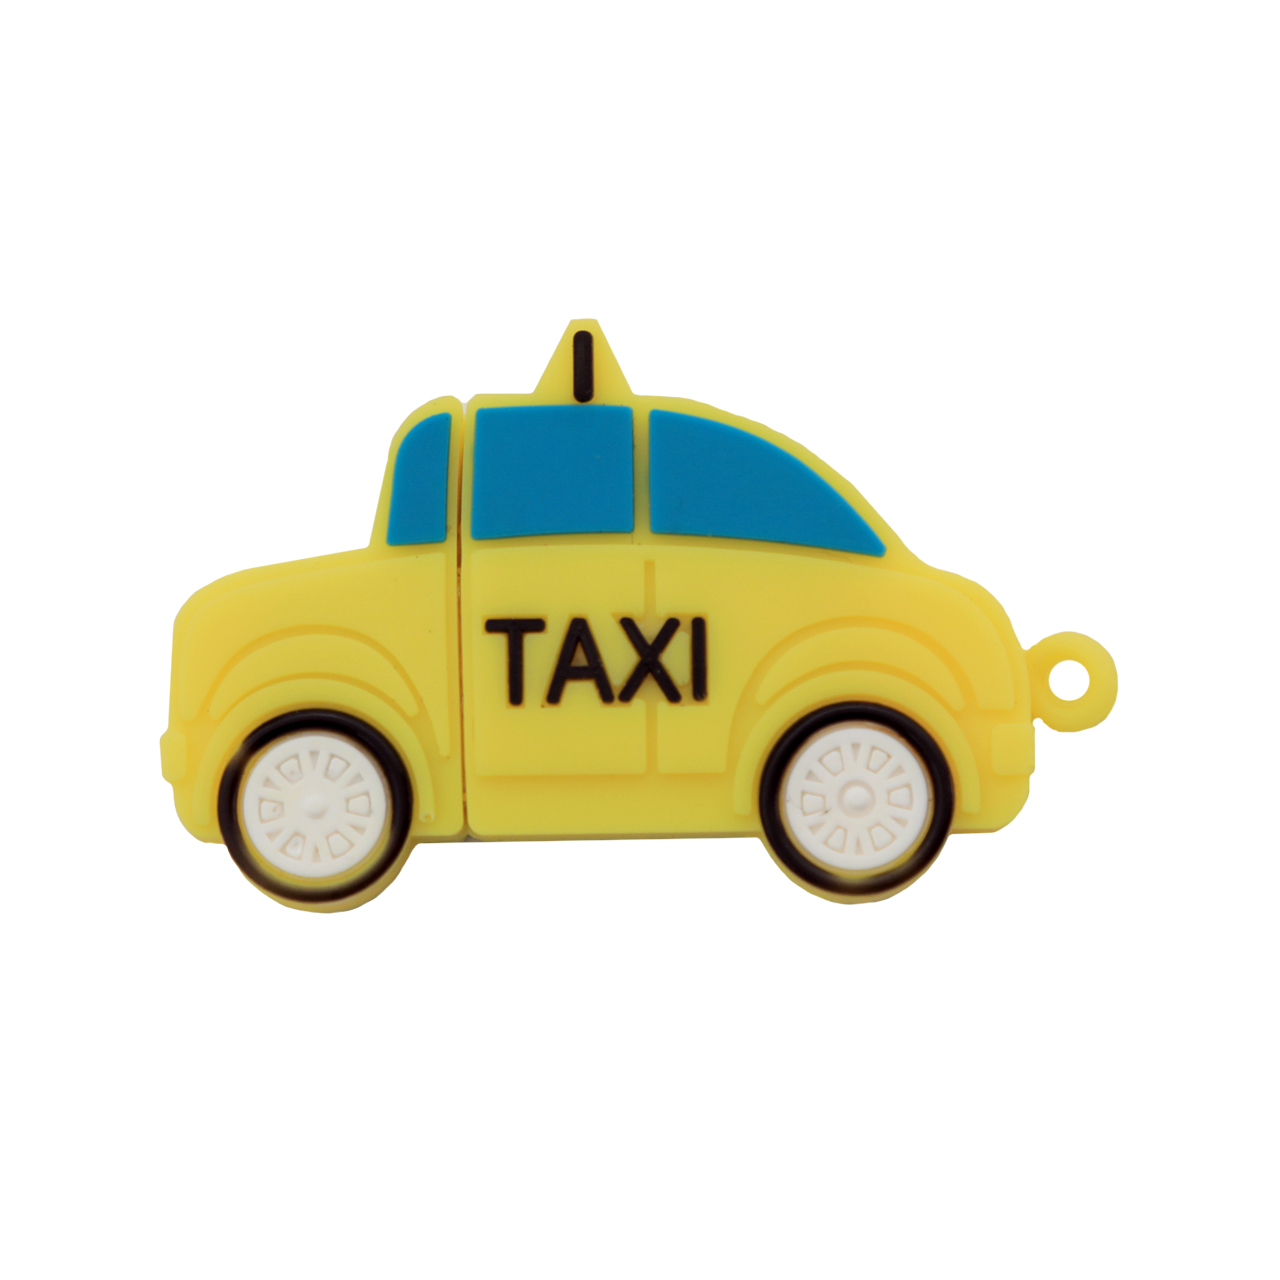 فلش مموری دایا دیتا طرح Taxi مدل PM1003-USB3 ظرفیت 32 گیگابایت